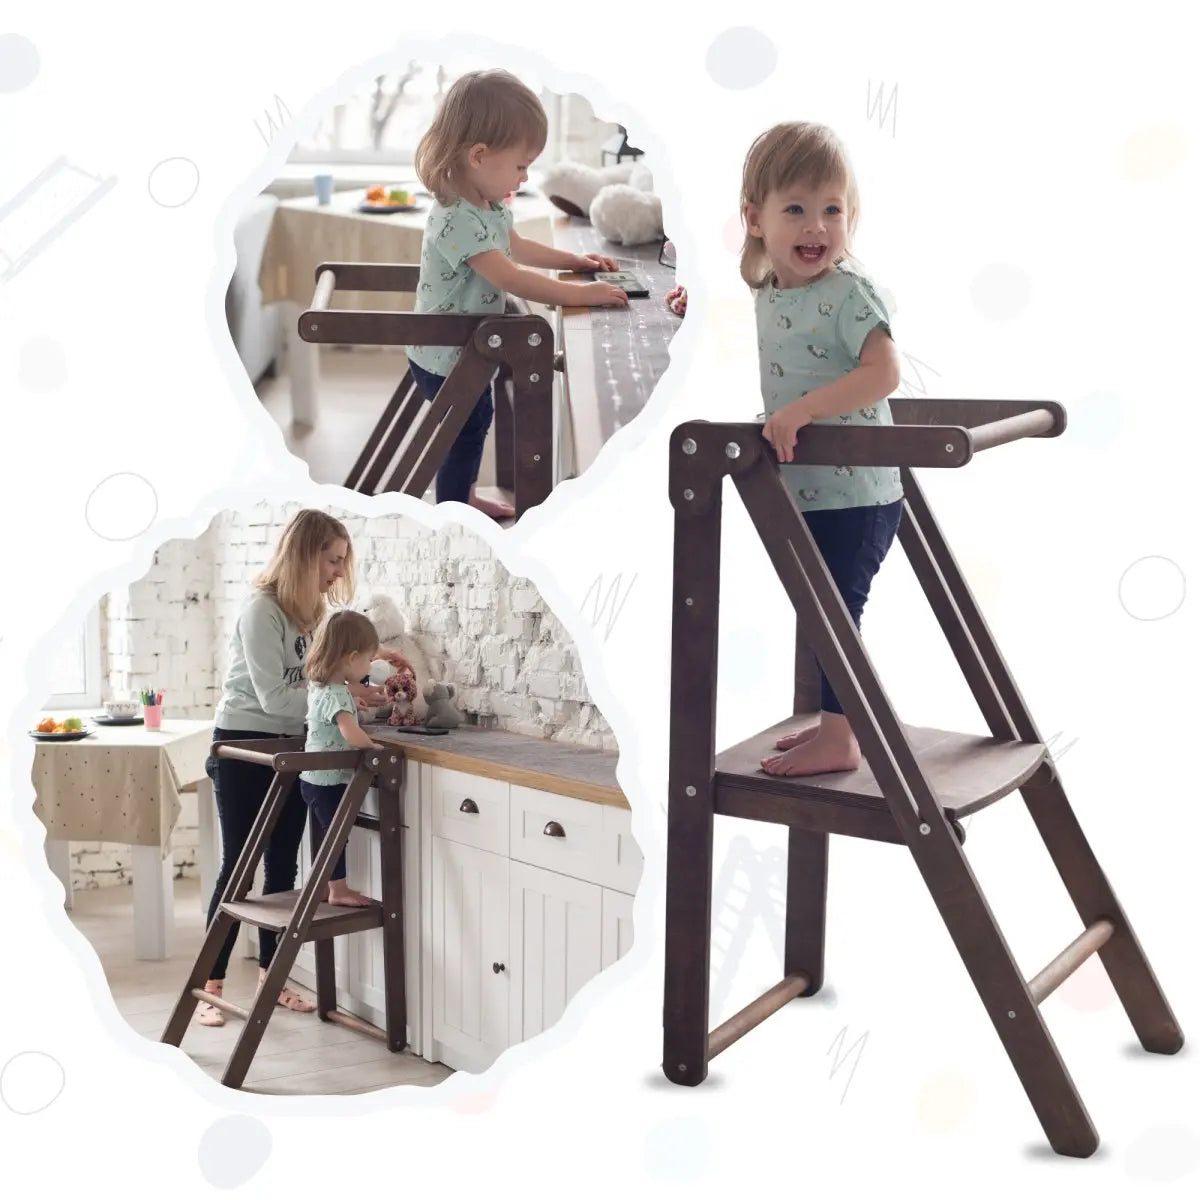 goodevas Goodevas Montessori-Möbel: Tritthocker aus Holz für Kinder